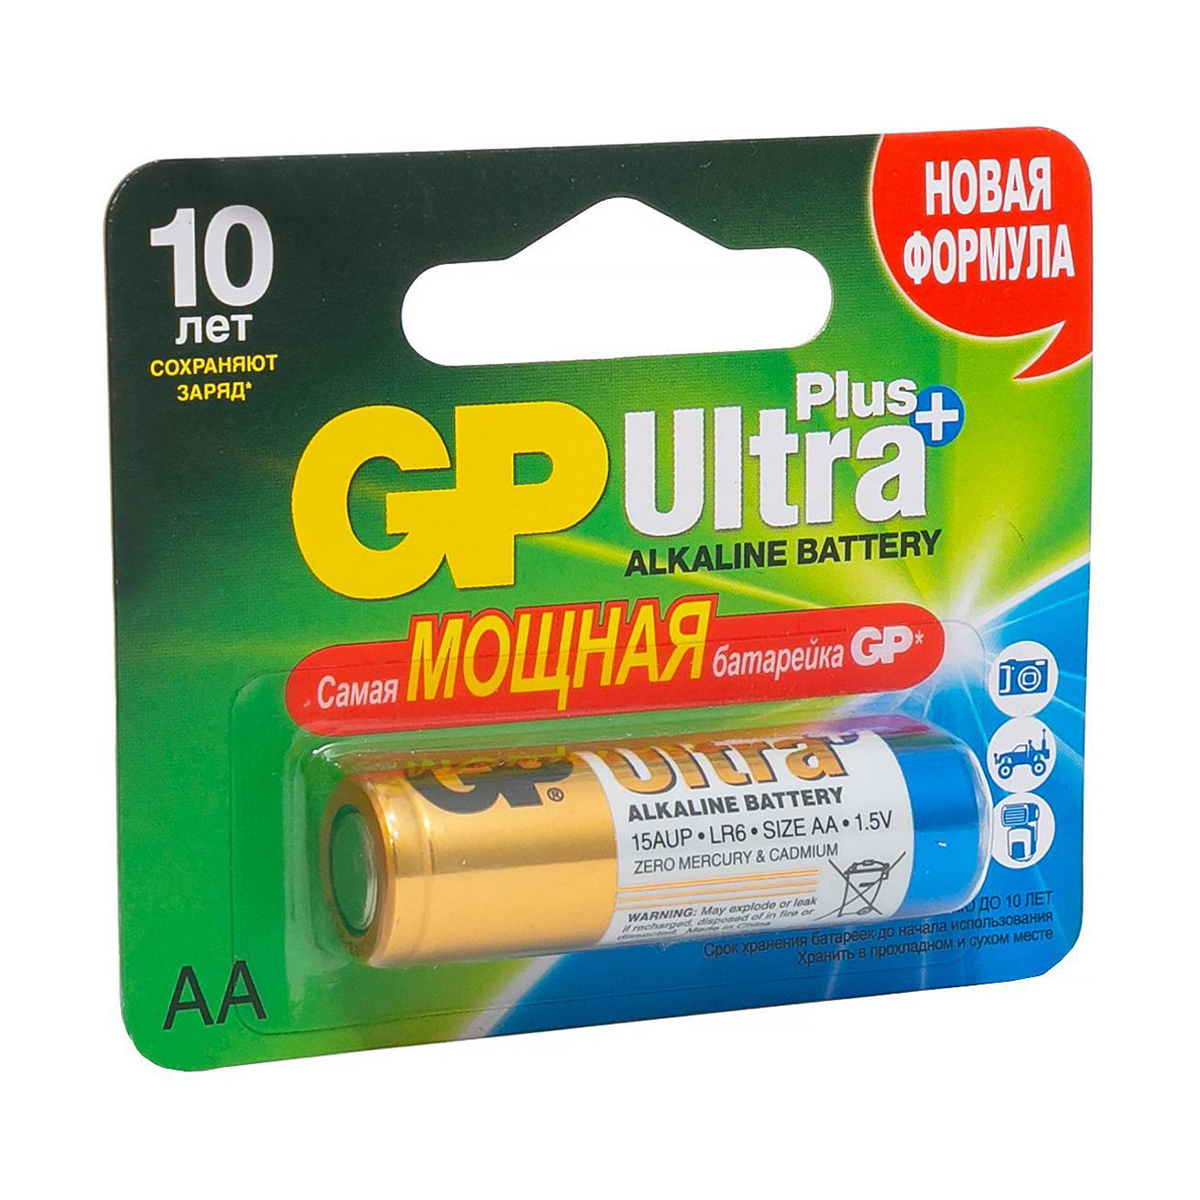 Батарейка gp ultra+ 15aup-2cr1  тип аа (1 шт. в блистере) (40/160)